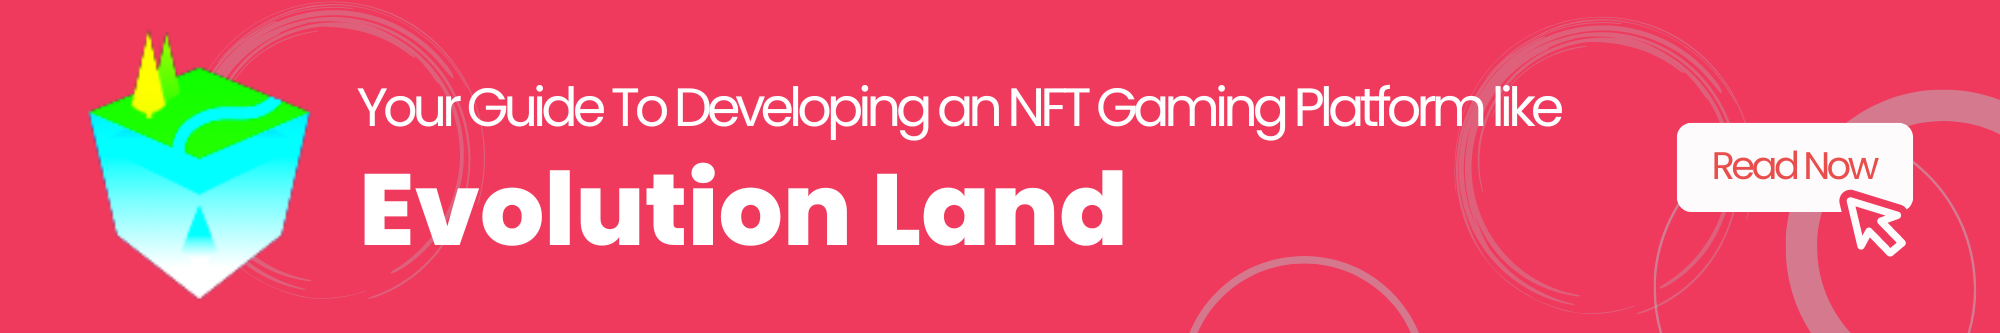 NFT Gaming Platform like Evolution Land